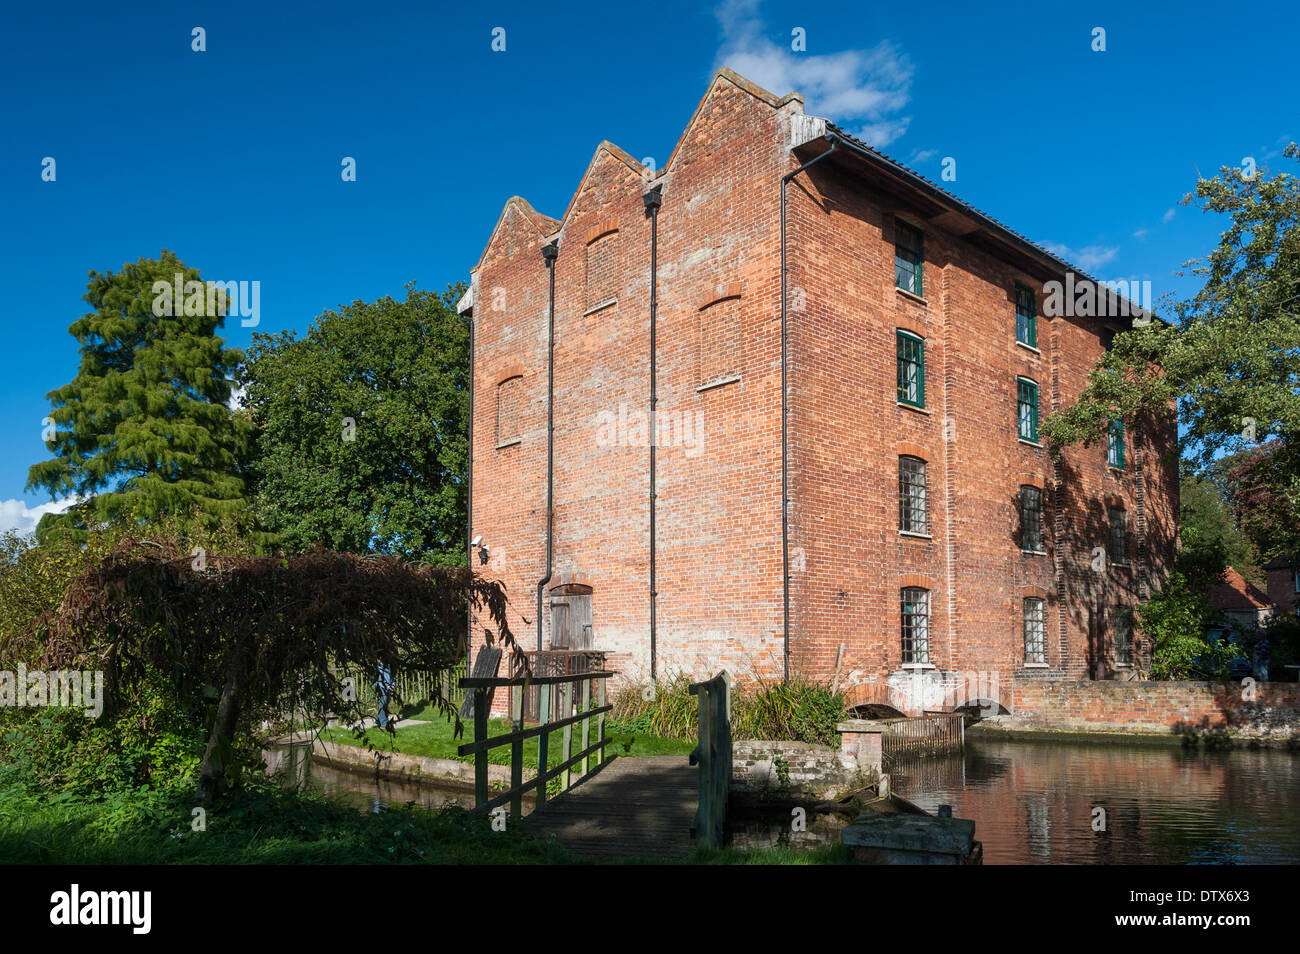 Letheringsett water mill, Holt, Norfolk. Stock Photo